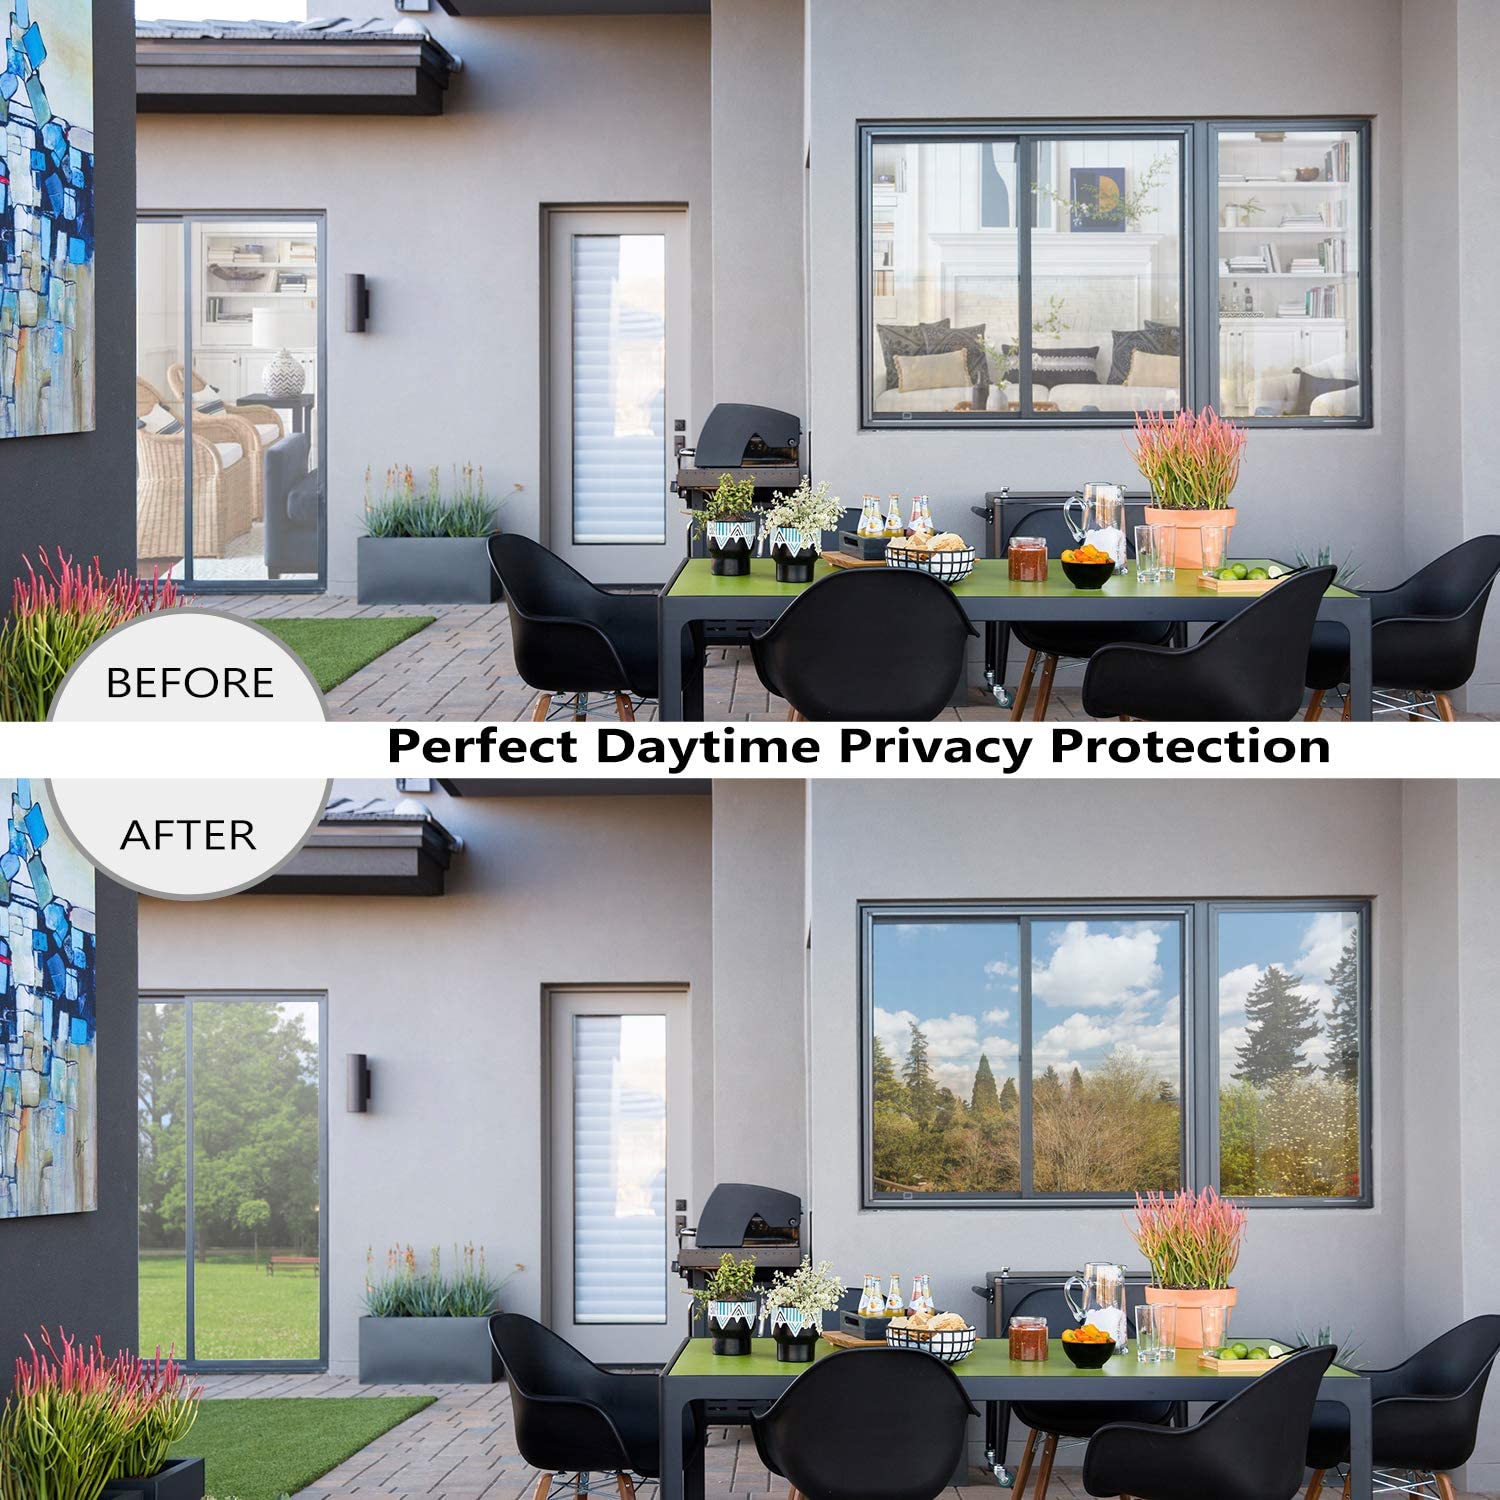 LUCKYYJ One Way Mirror Window Film Daytime Privacy, Sun Blocking Heat Control Anti UV Reflective Film Window Tint Glass Sticker